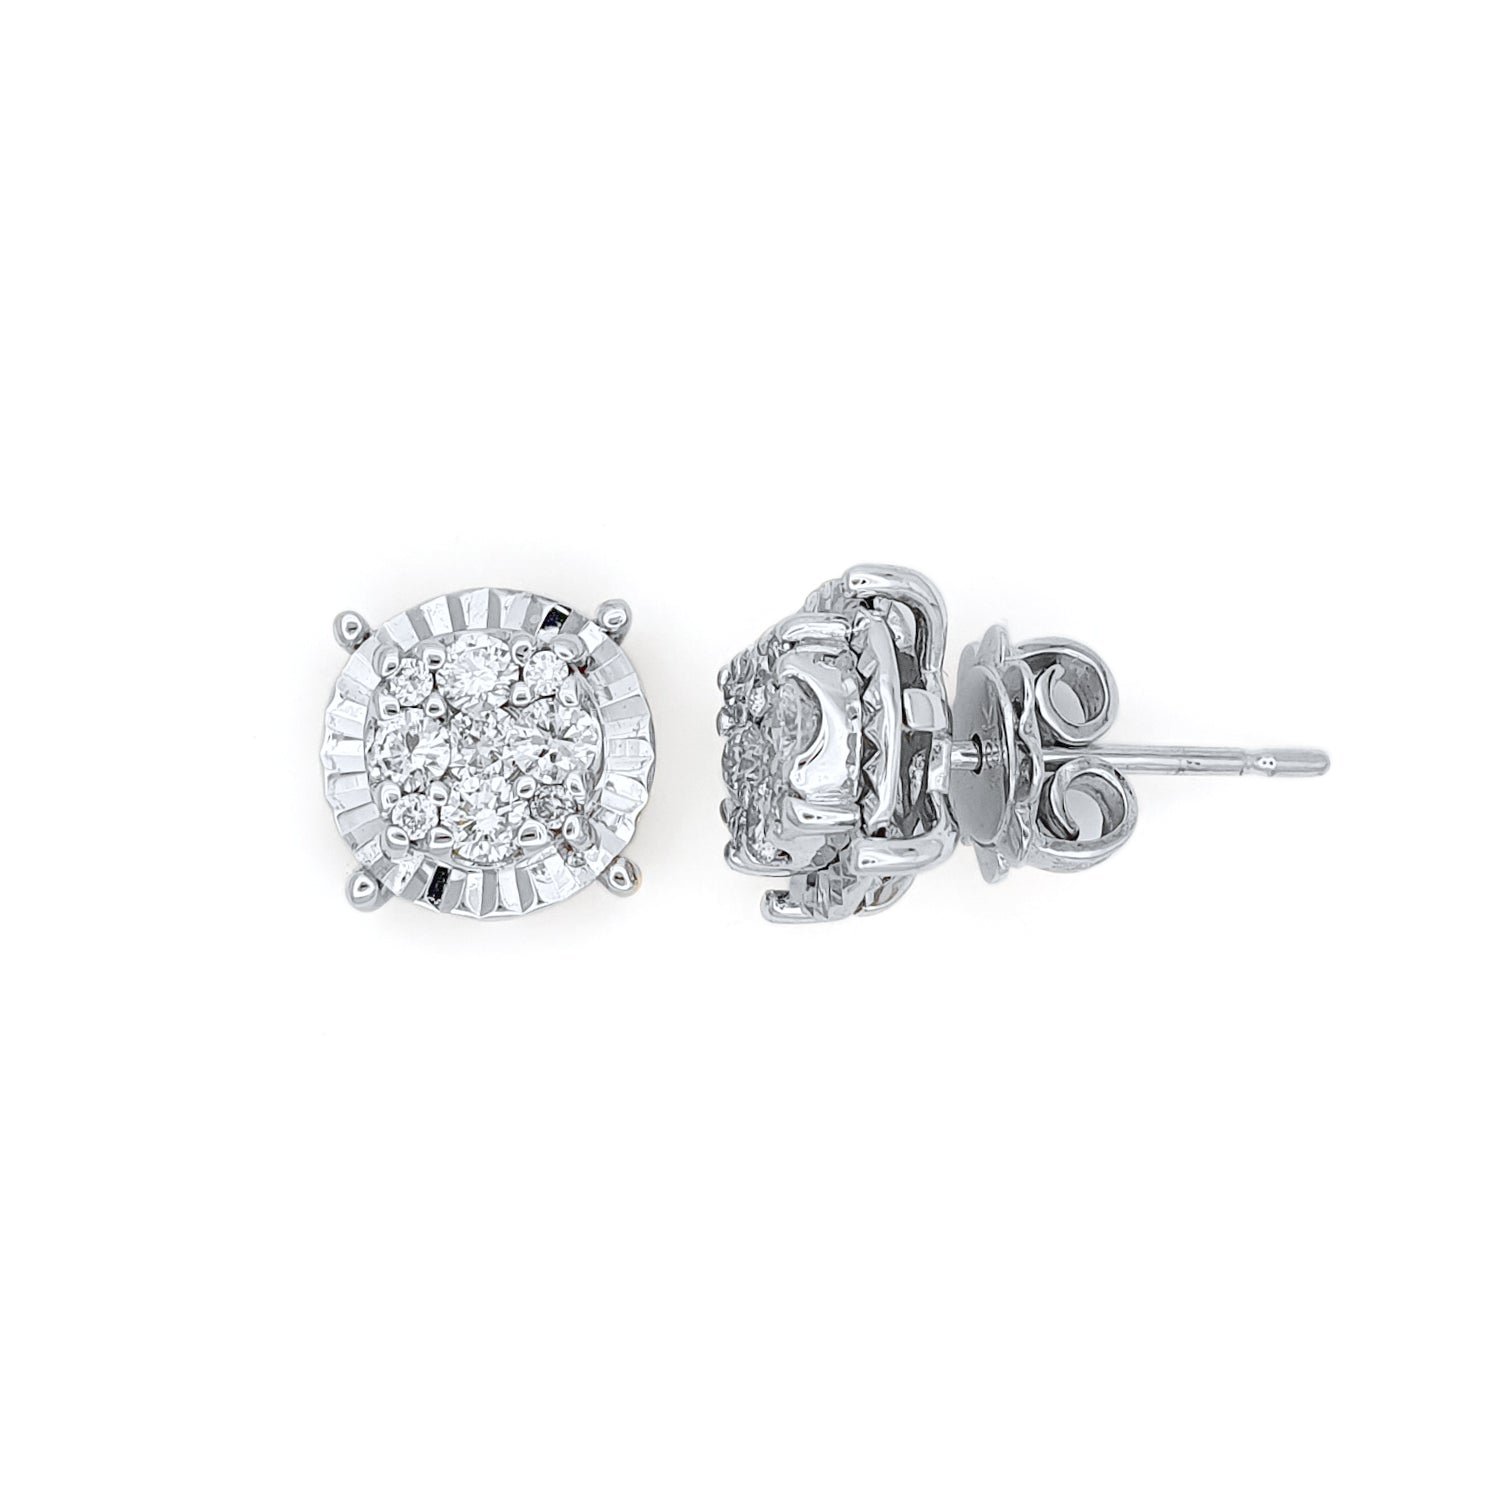 White Gold Diamond Earrings | Stud Earrings | Meicel Jewelry Store